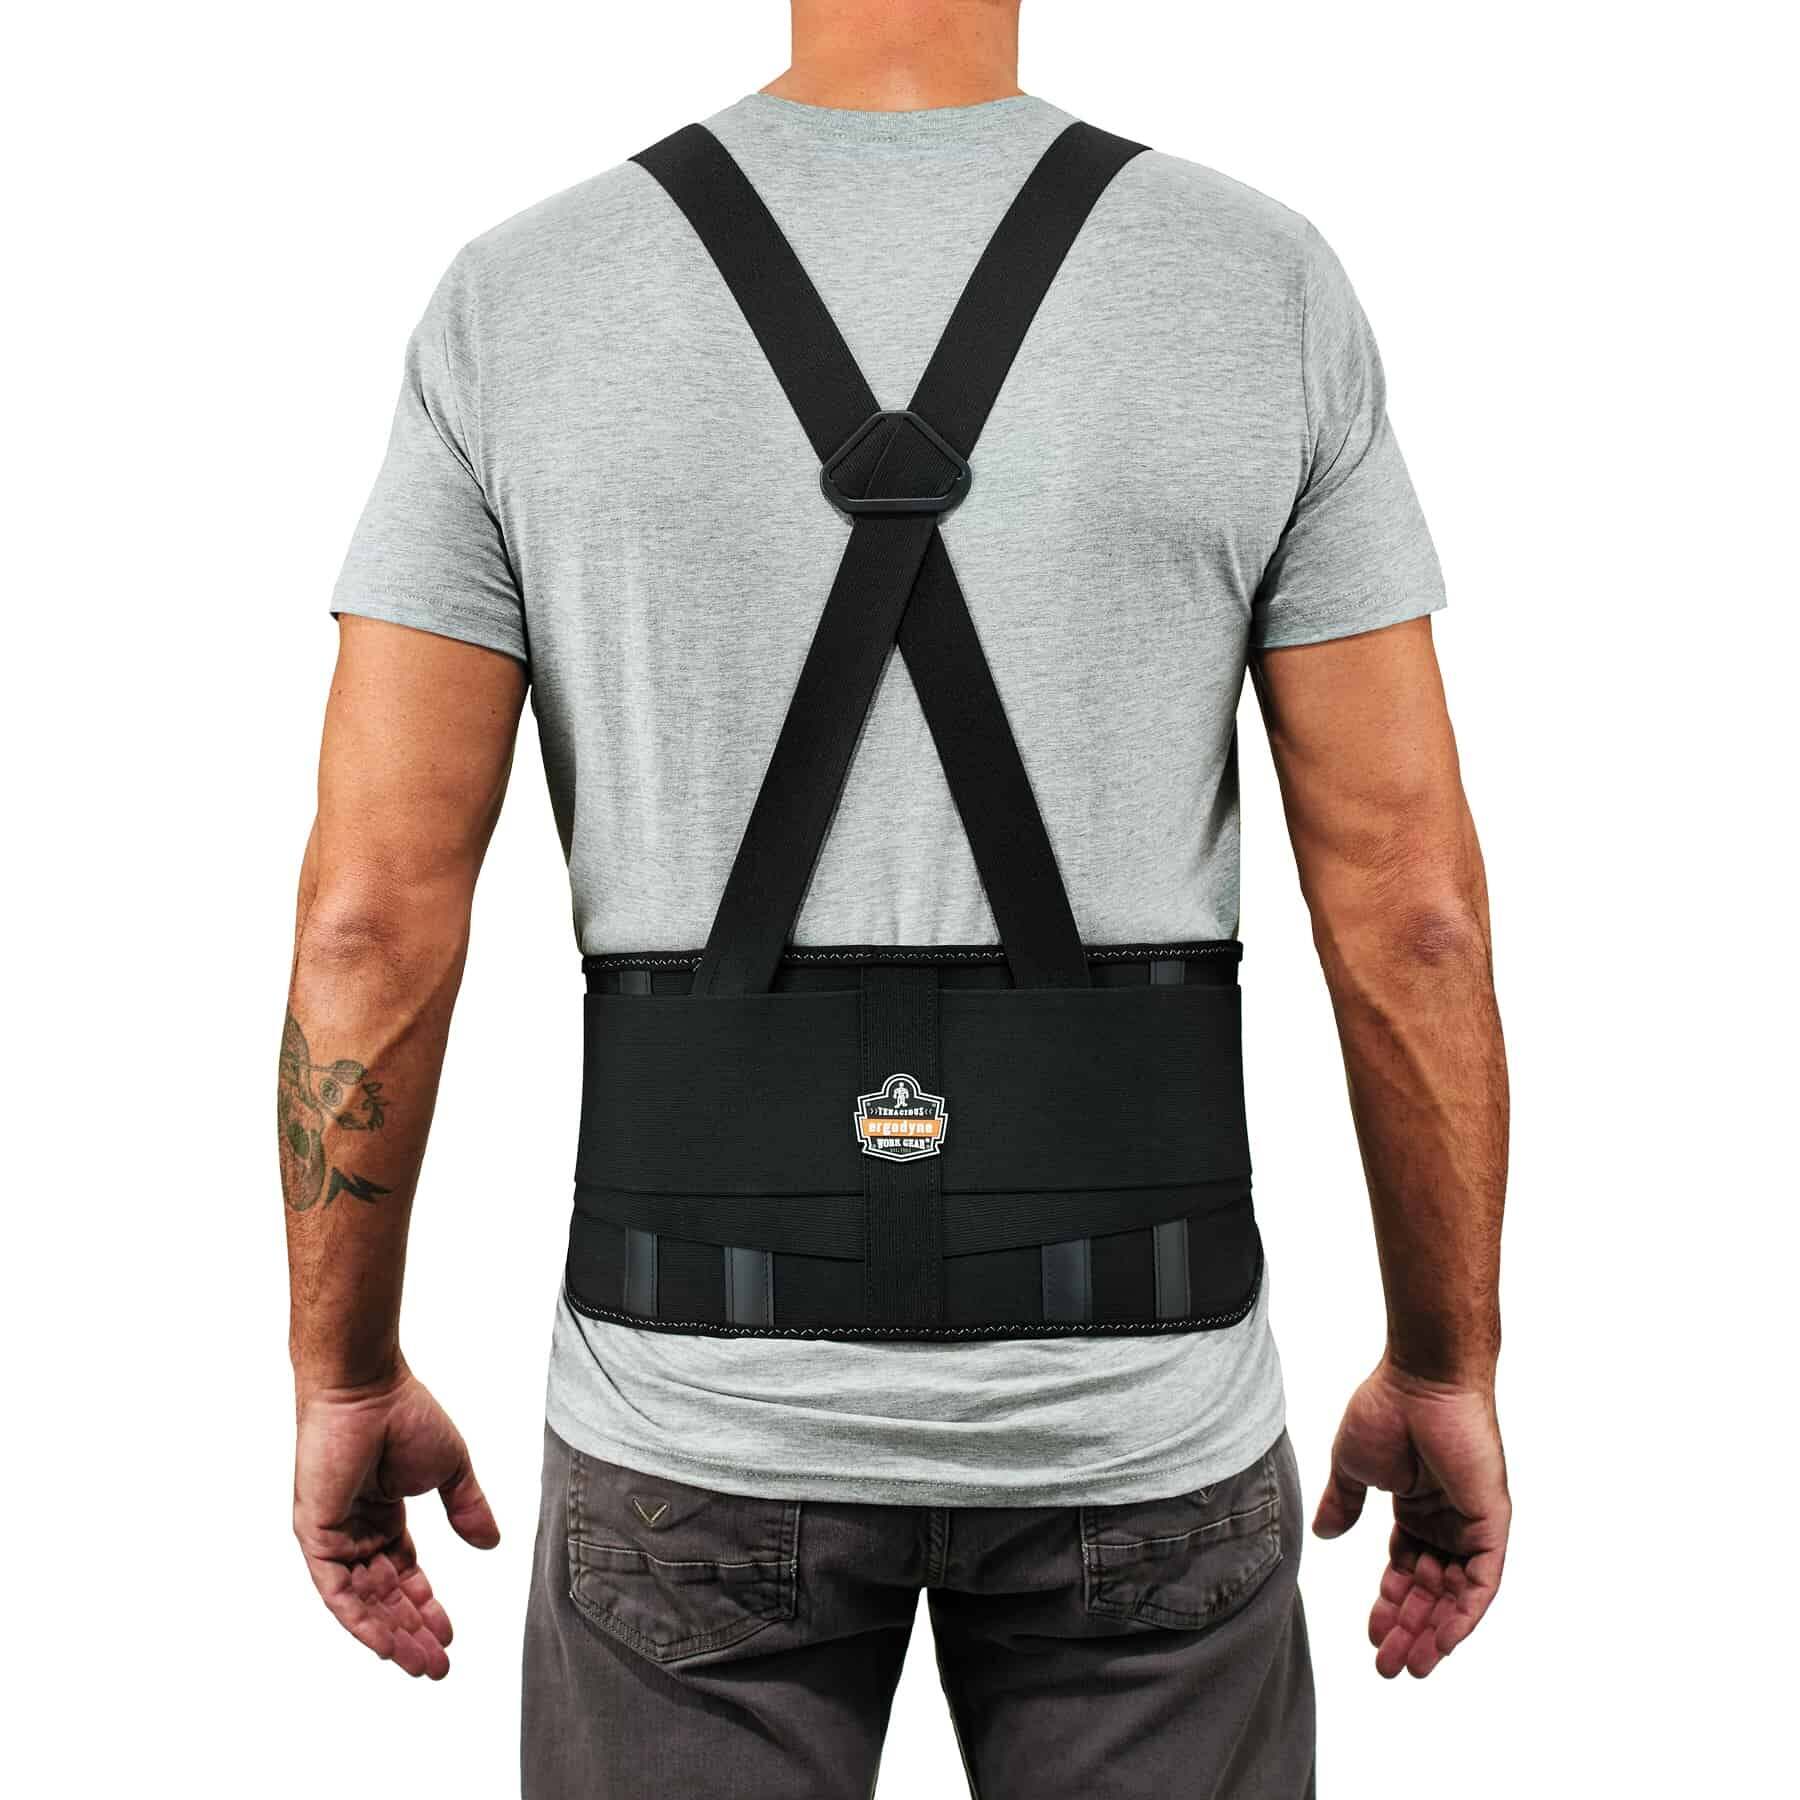 Industrial back support belt with adjustable shoulder straps.